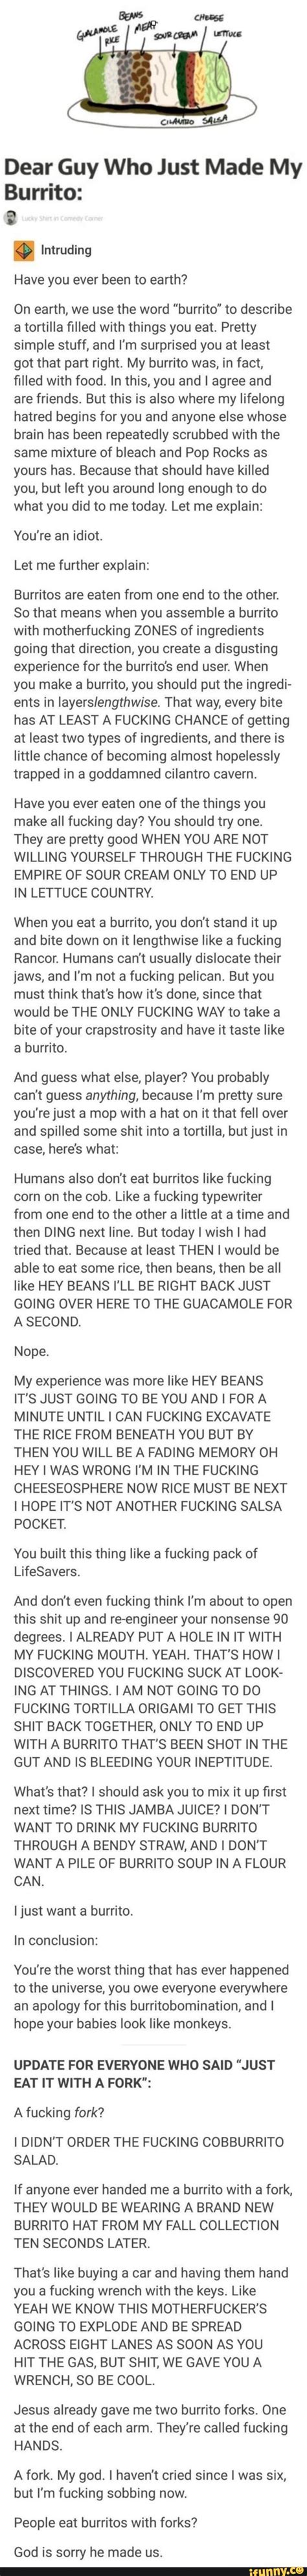 Burrito Go Brrrr Scrolller